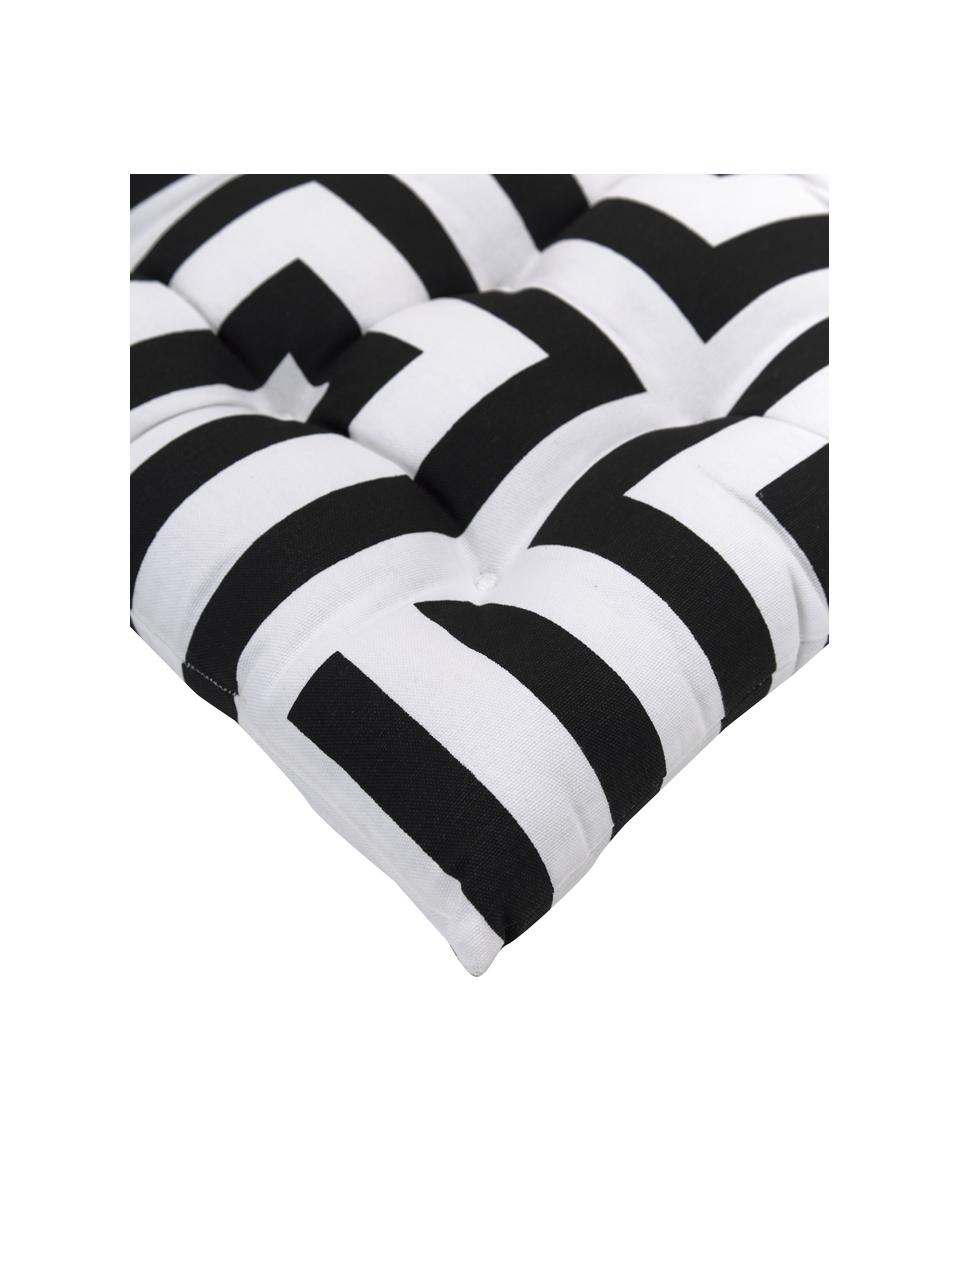 Baumwoll-Sitzkissen Bram mit grafischem Muster, Bezug: 100% Baumwolle, Schwarz, Weiß, B 40 x L 40 cm